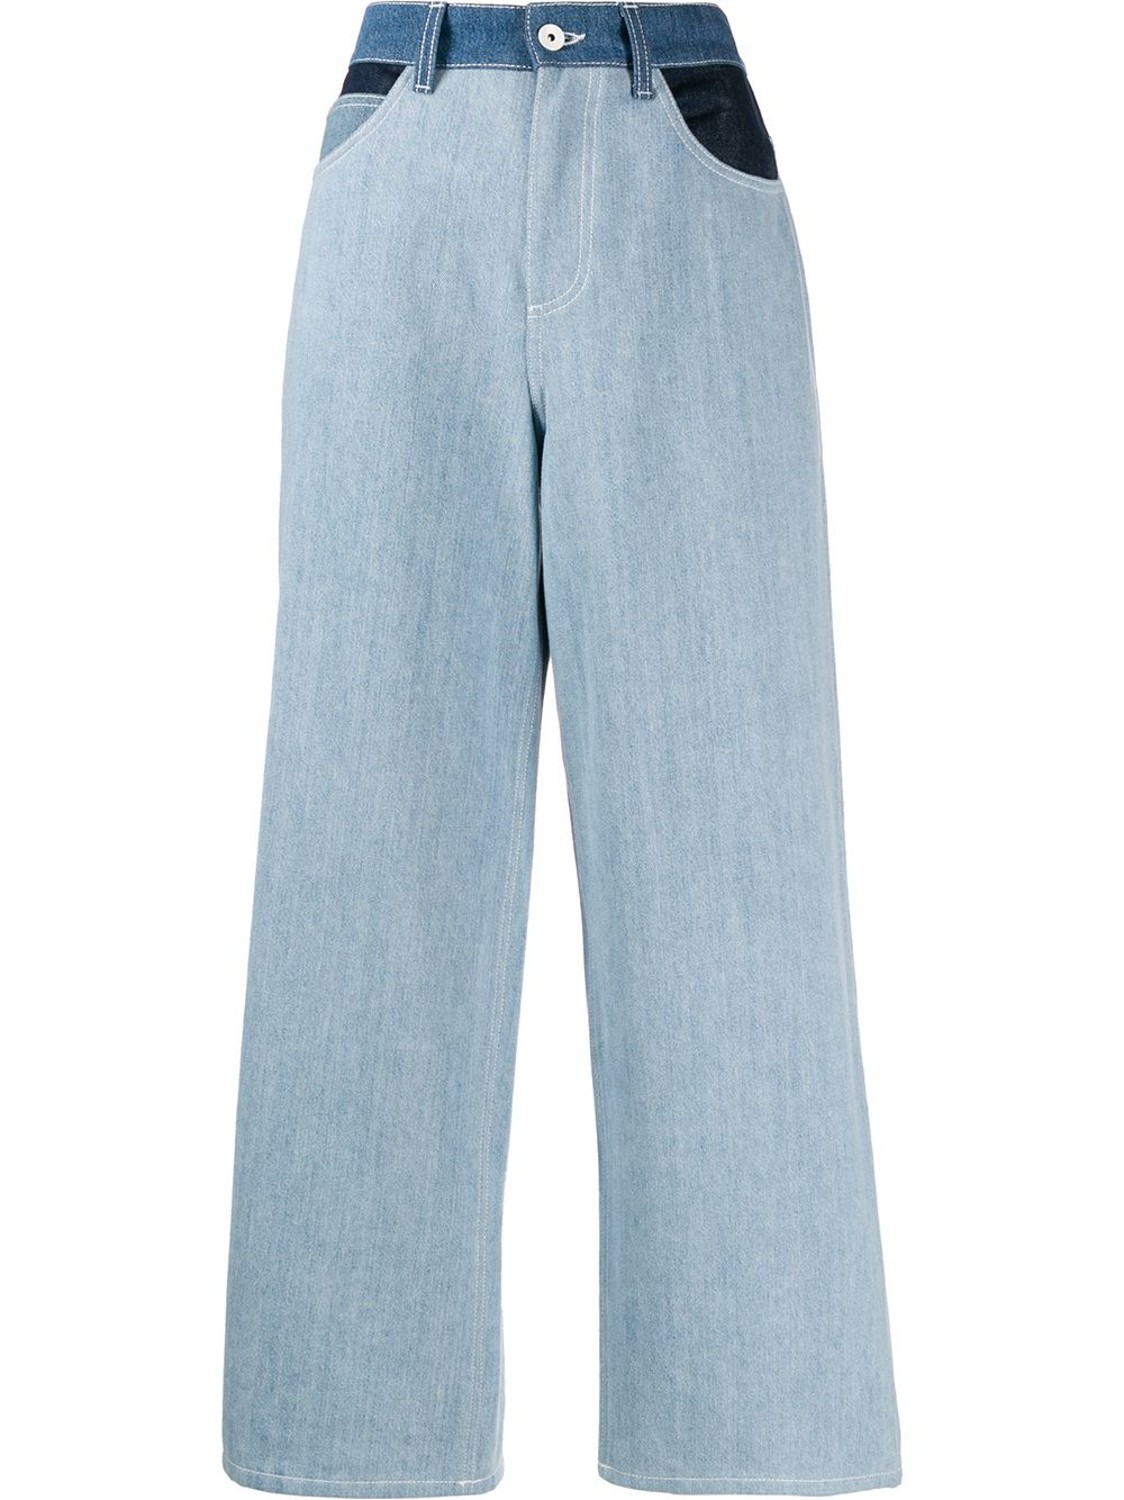 shop Marni Saldi Pantaloni: Pantalone Marni, jeans, modello ampio, tasche davanti e dietro, dettagli a contrasto di colore, zip e bottone a chiusura davanti.

Composizione: 100% cotone. number 1617